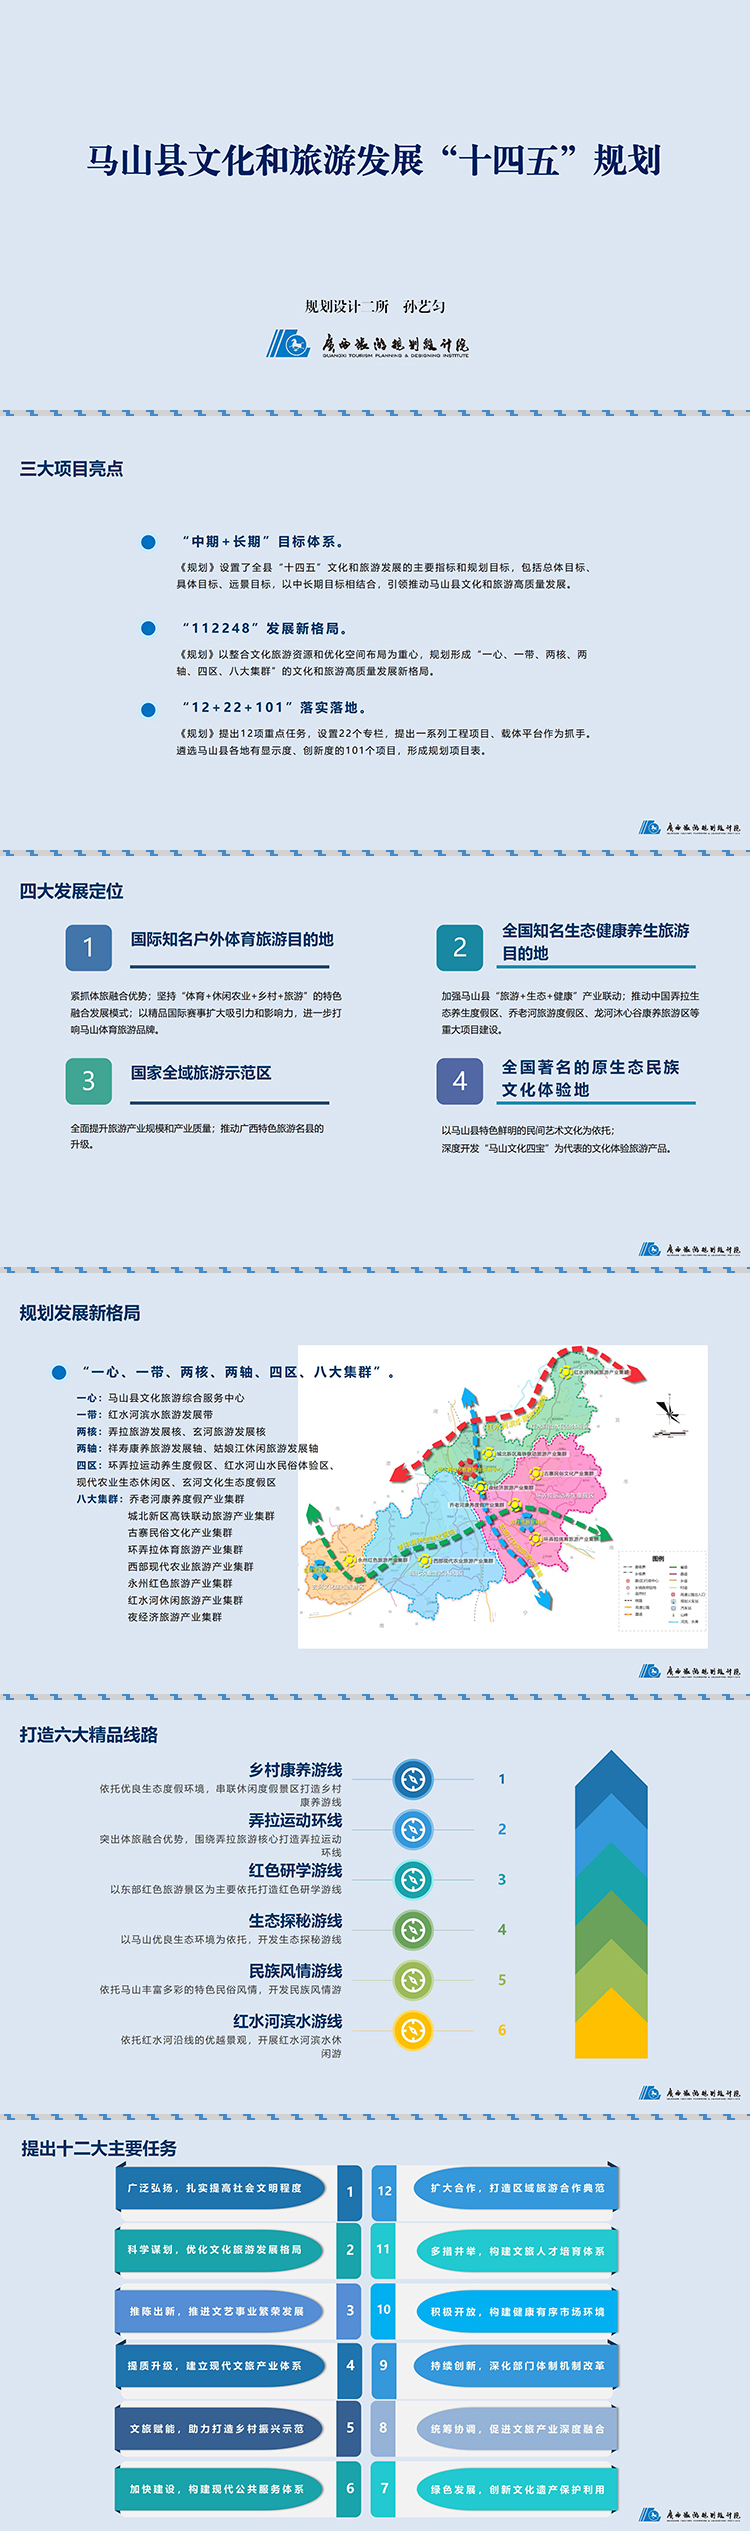 马山县文化和旅行发展十四五规划2022-01-26 - 副本.jpg